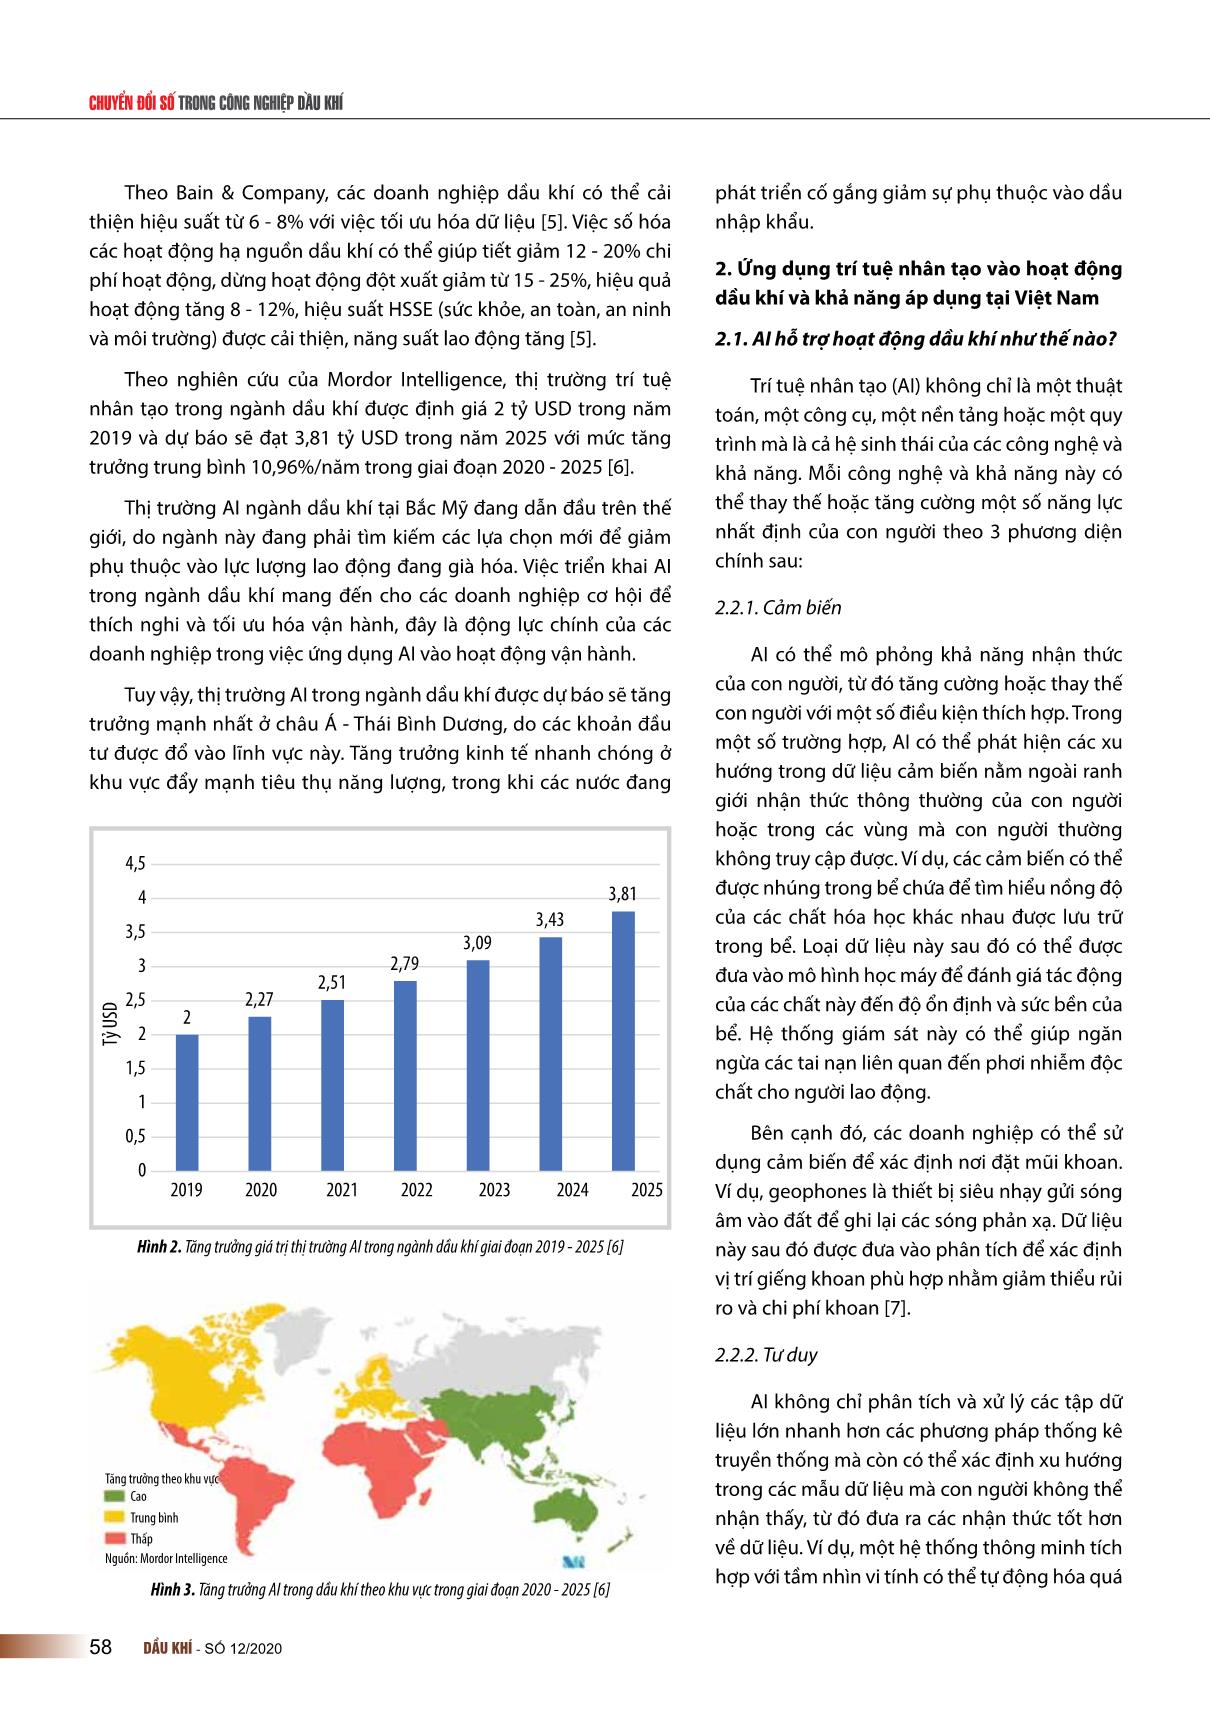 Trí tuệ nhân tạo trong lĩnh vực dầu khí và khả năng ứng dụng tại Việt Nam trang 2